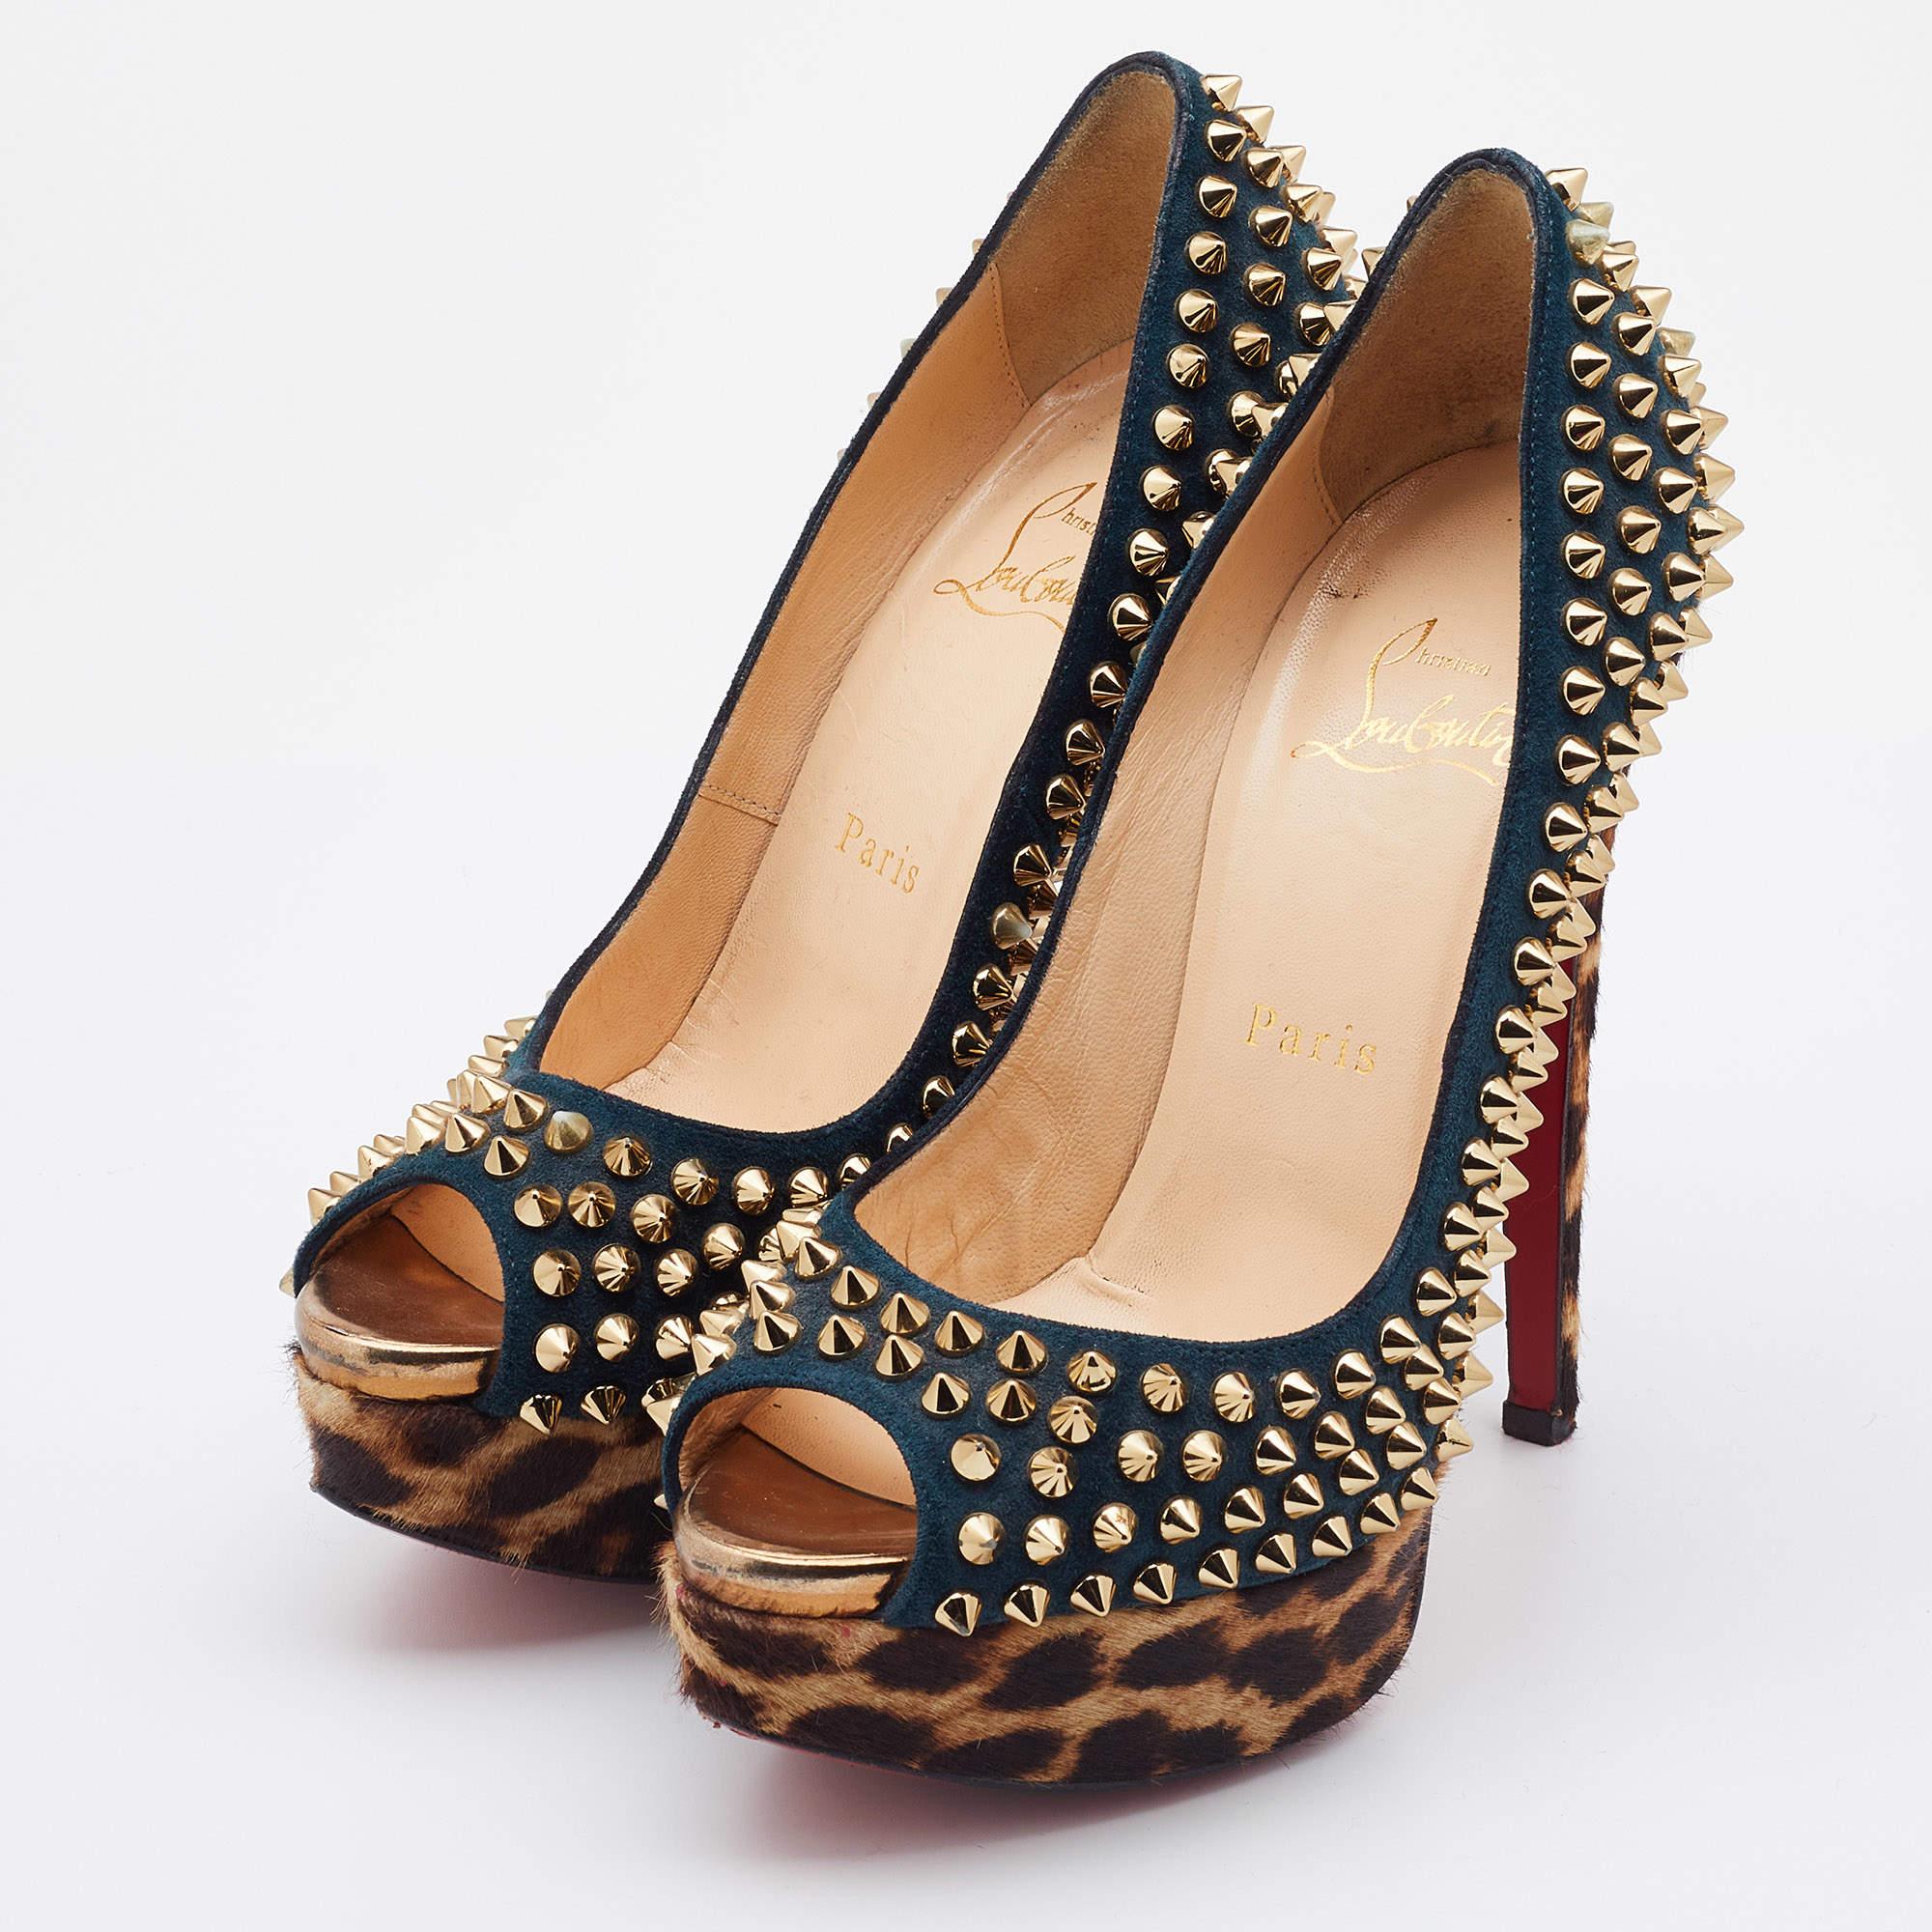 Affichez un style élégant avec cette paire d'escarpins. Ces chaussures de marque pour femmes sont fabriquées à partir de matériaux de qualité. Ils sont posés sur des semelles durables et des talons élégants.

Comprend : Sac à poussière original